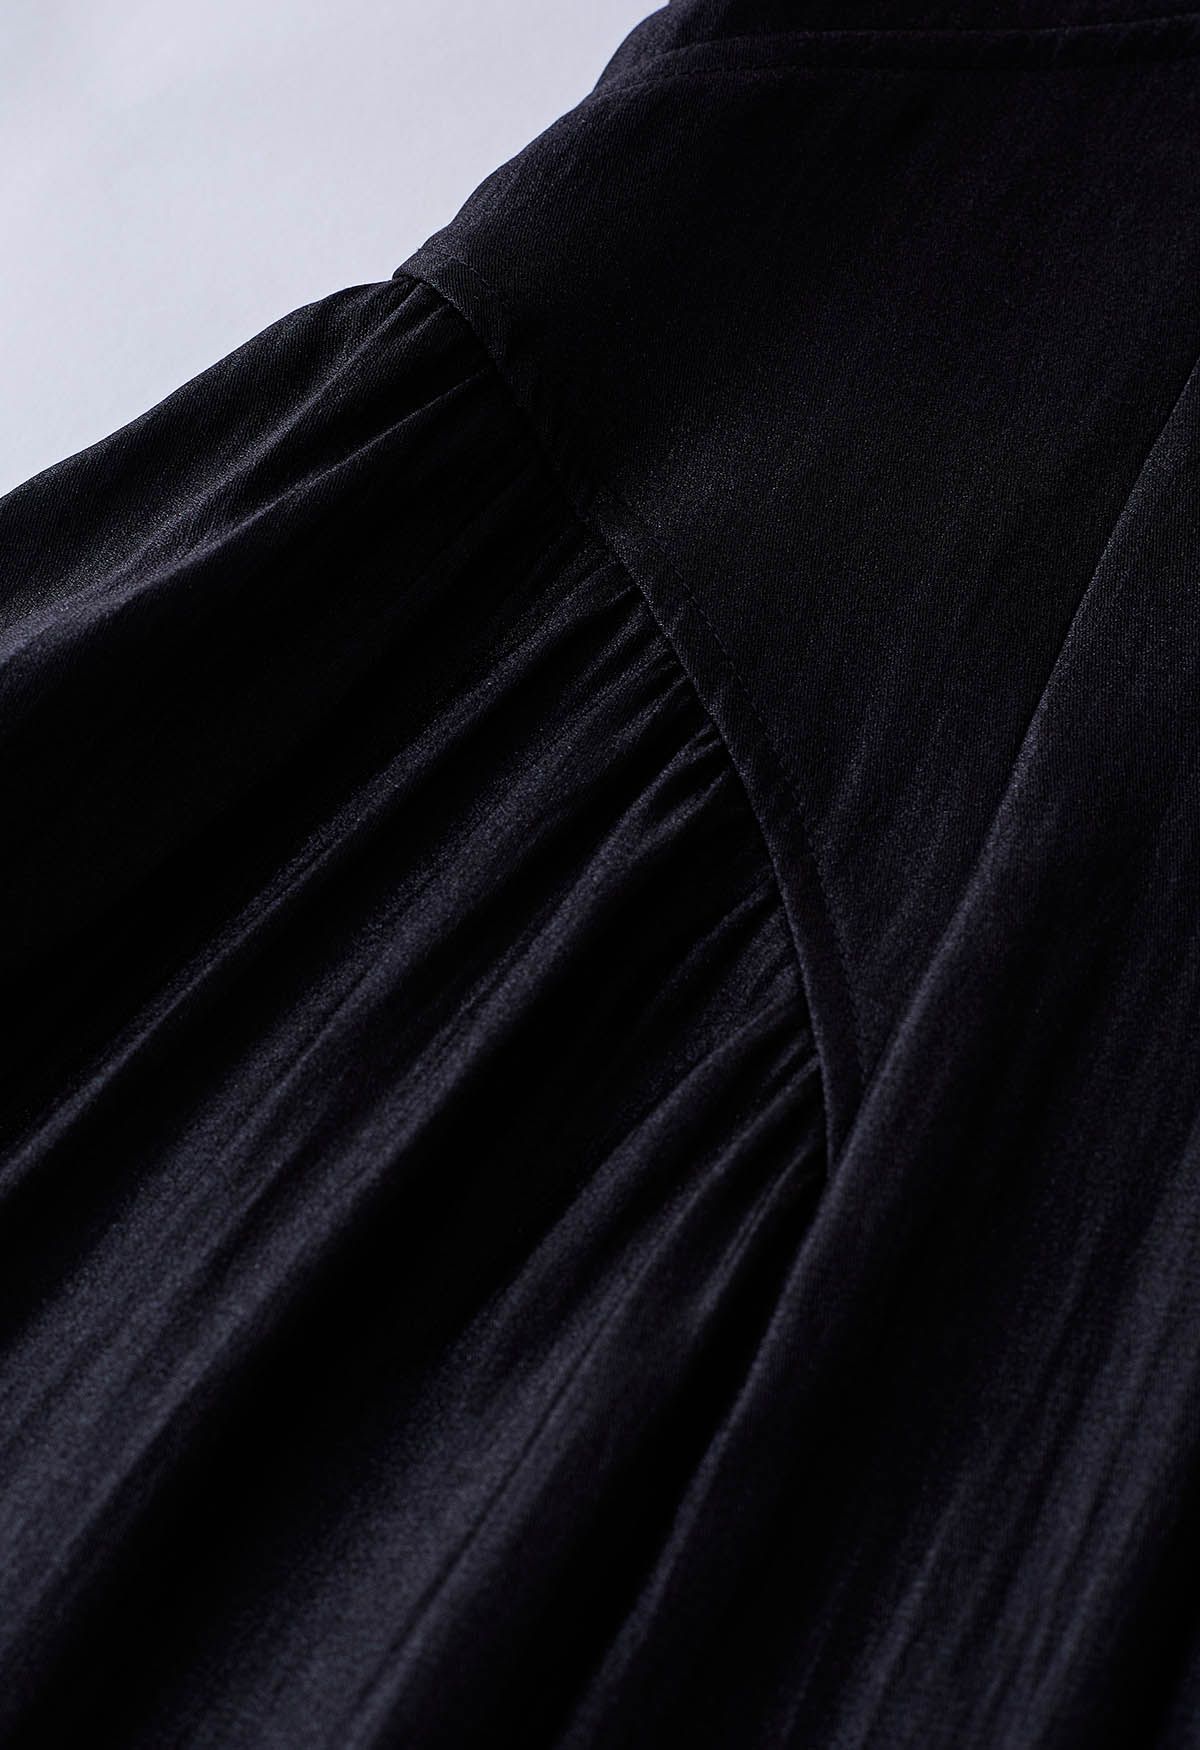 Glänzendes Cami-Kleid mit doppelten Schnüren in Schwarz